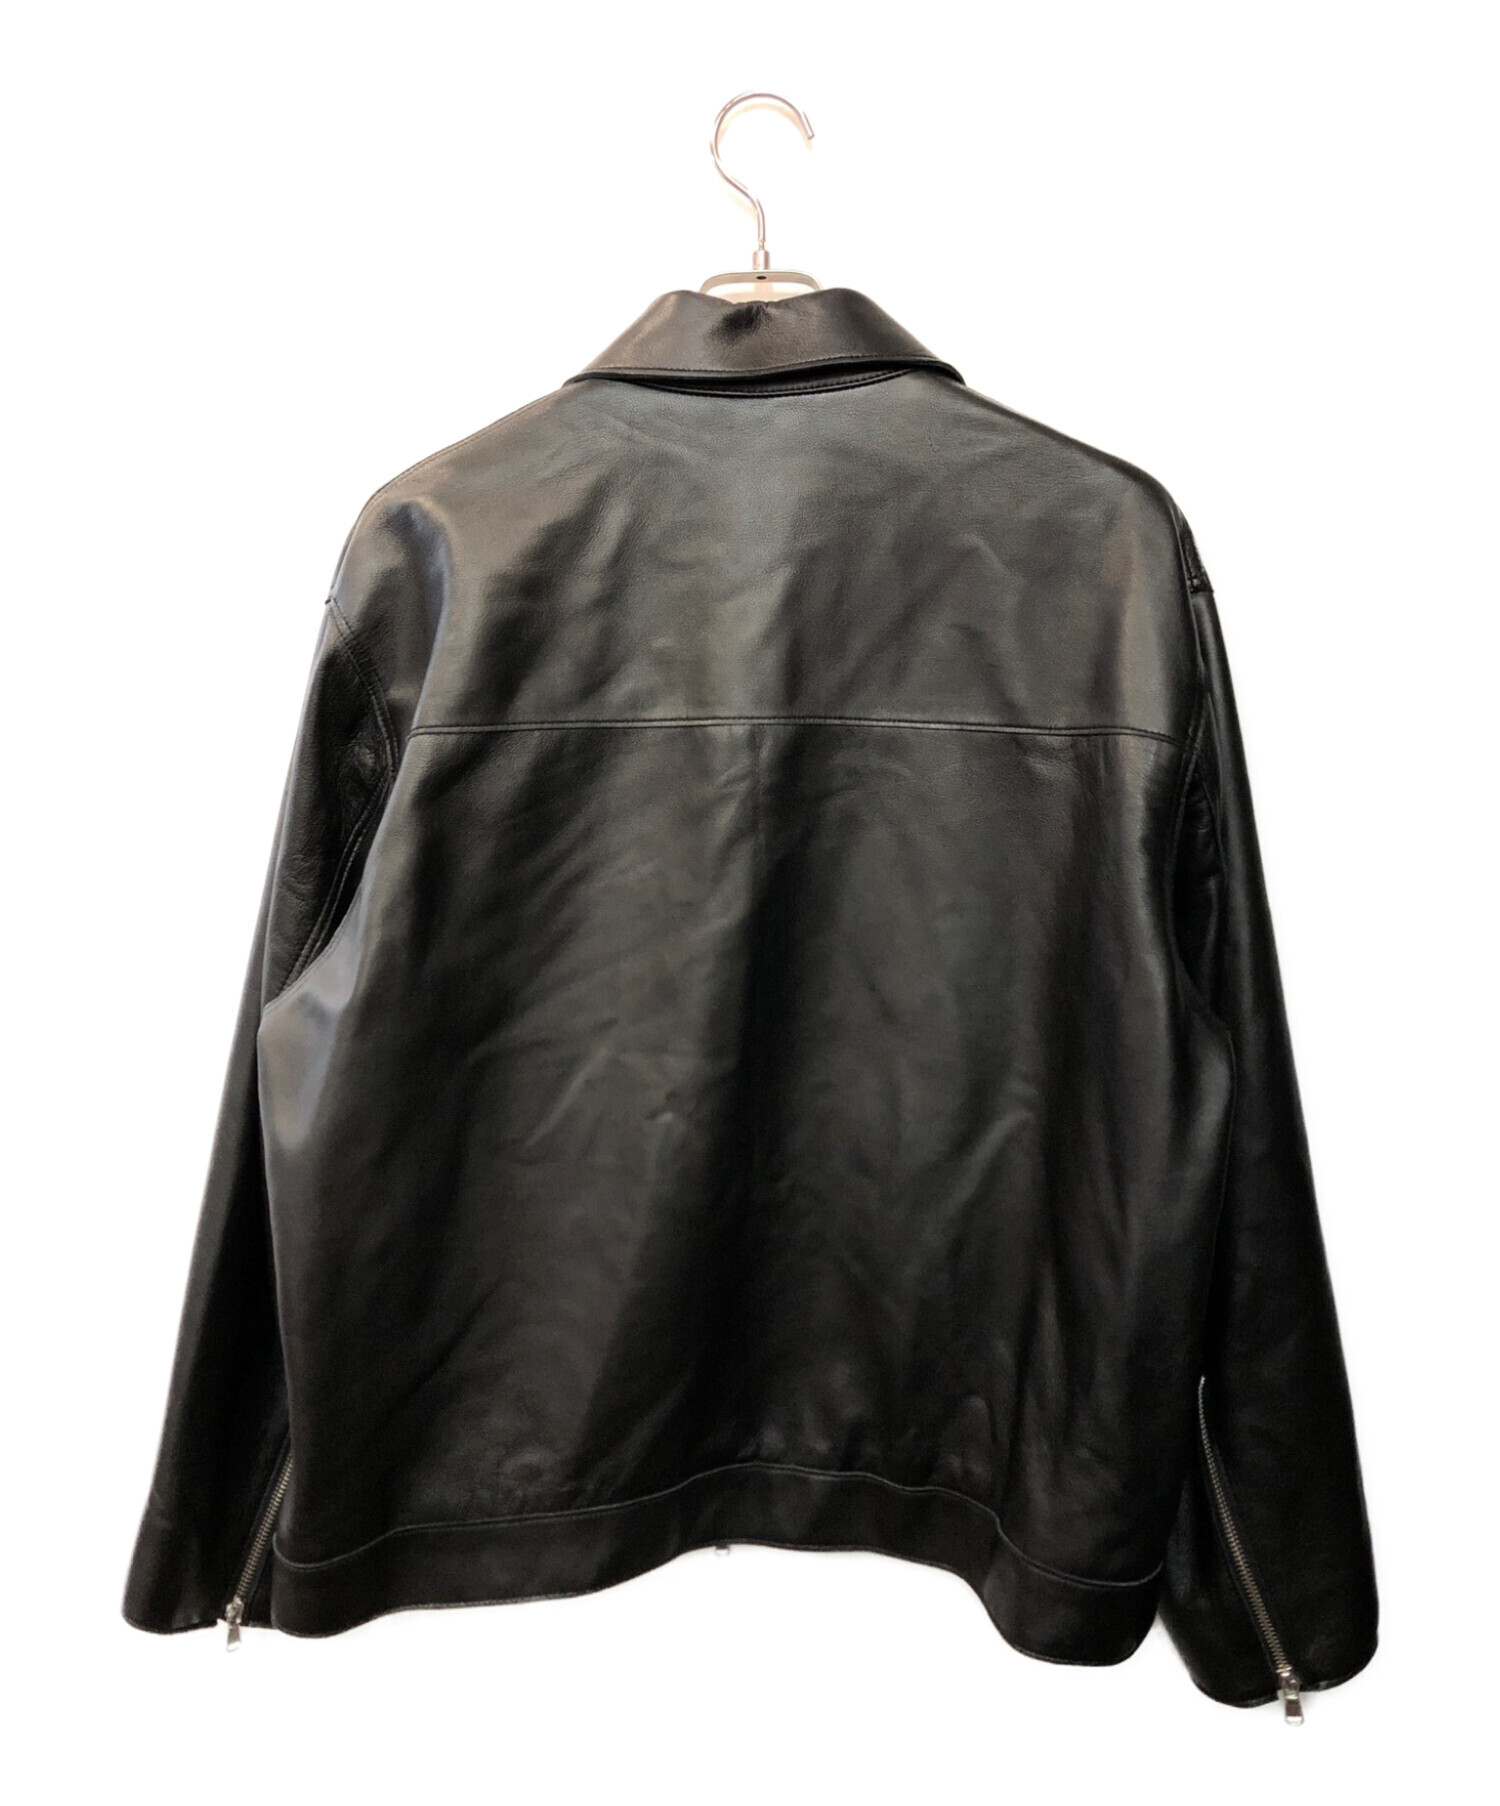 MAISON SPECIAL (メゾンスペシャル) ラムレザープライムオーバー襟付きシングルライダースジャケット ブラック サイズ:00